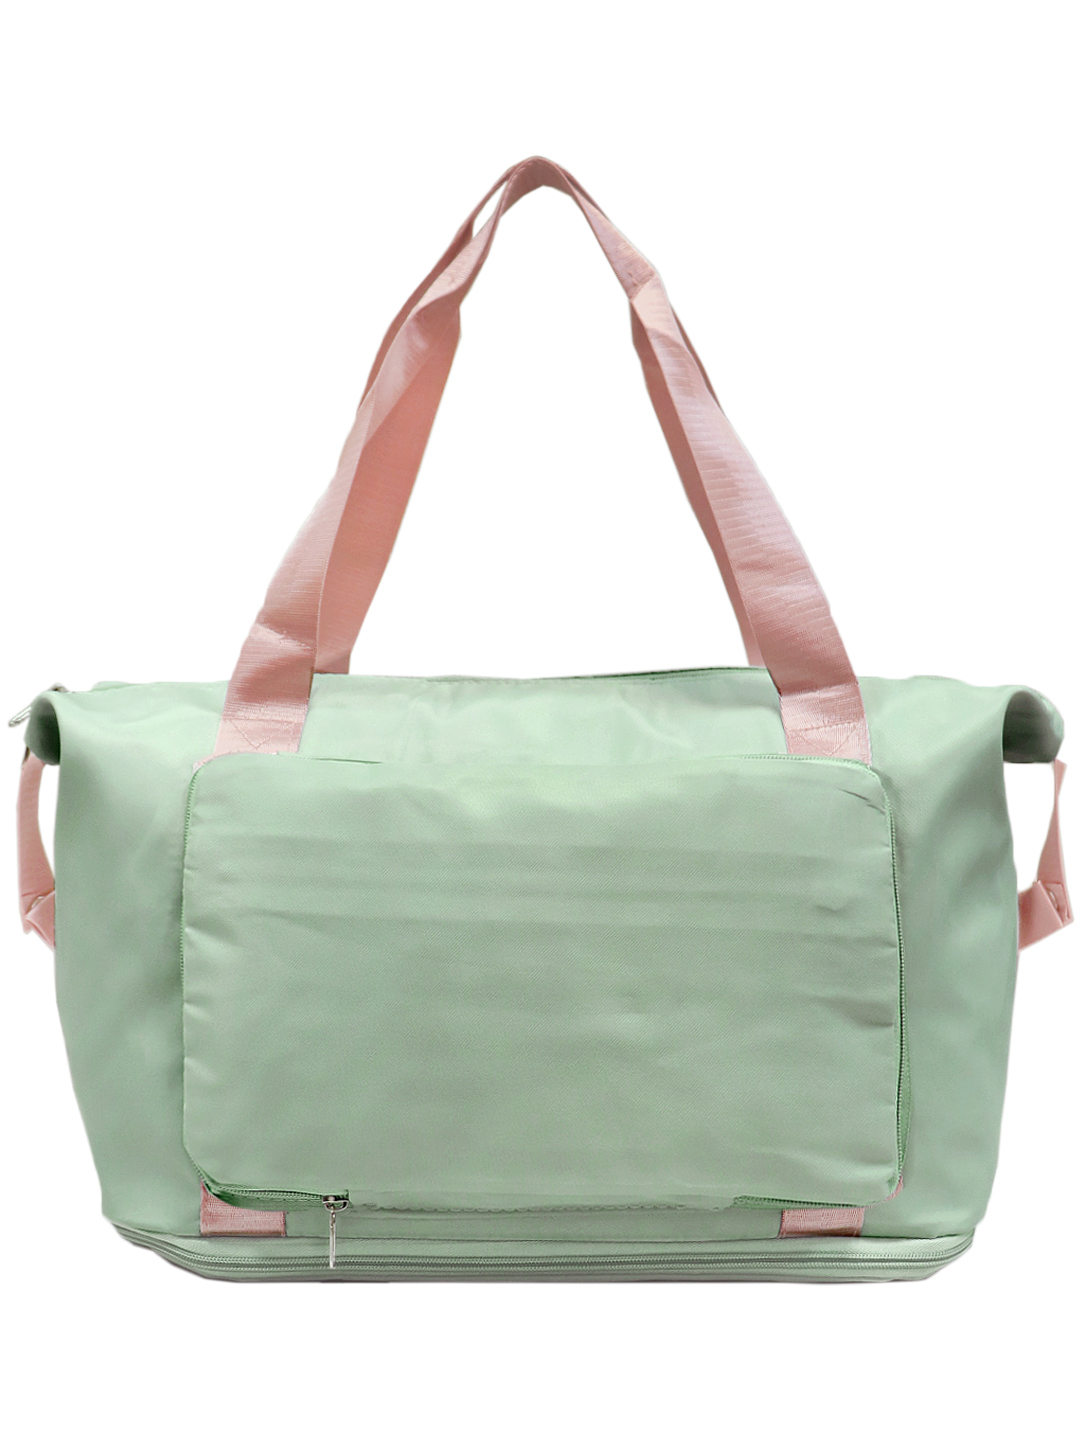 Дорожная сумка женская Caramelo 202201-3 салатовая/розовая, 26х42х20 см